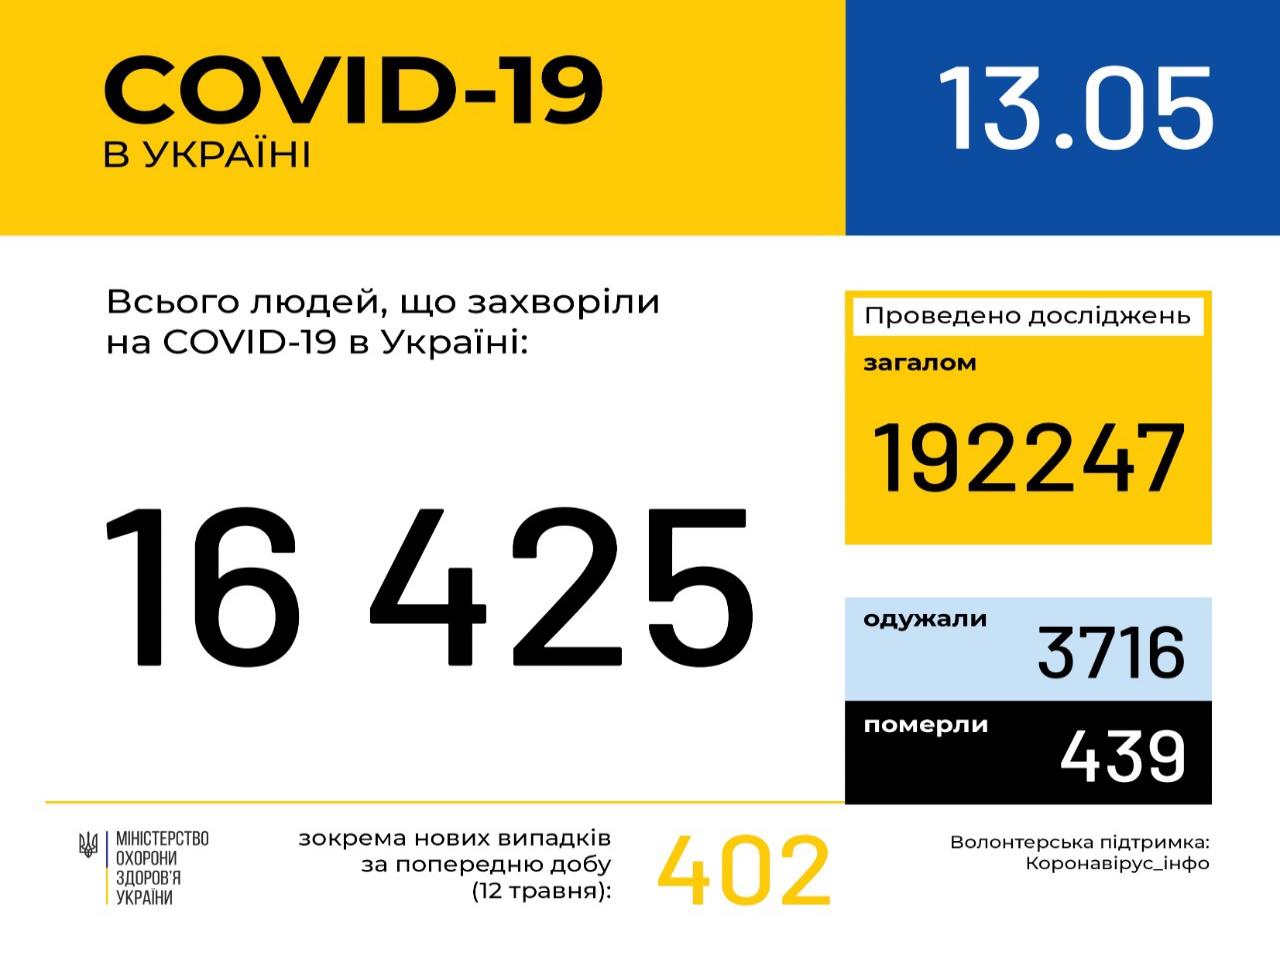 http://dunrada.gov.ua/uploadfile/archive_news/2020/05/13/2020-05-13_5339/images/images-4101.jpg